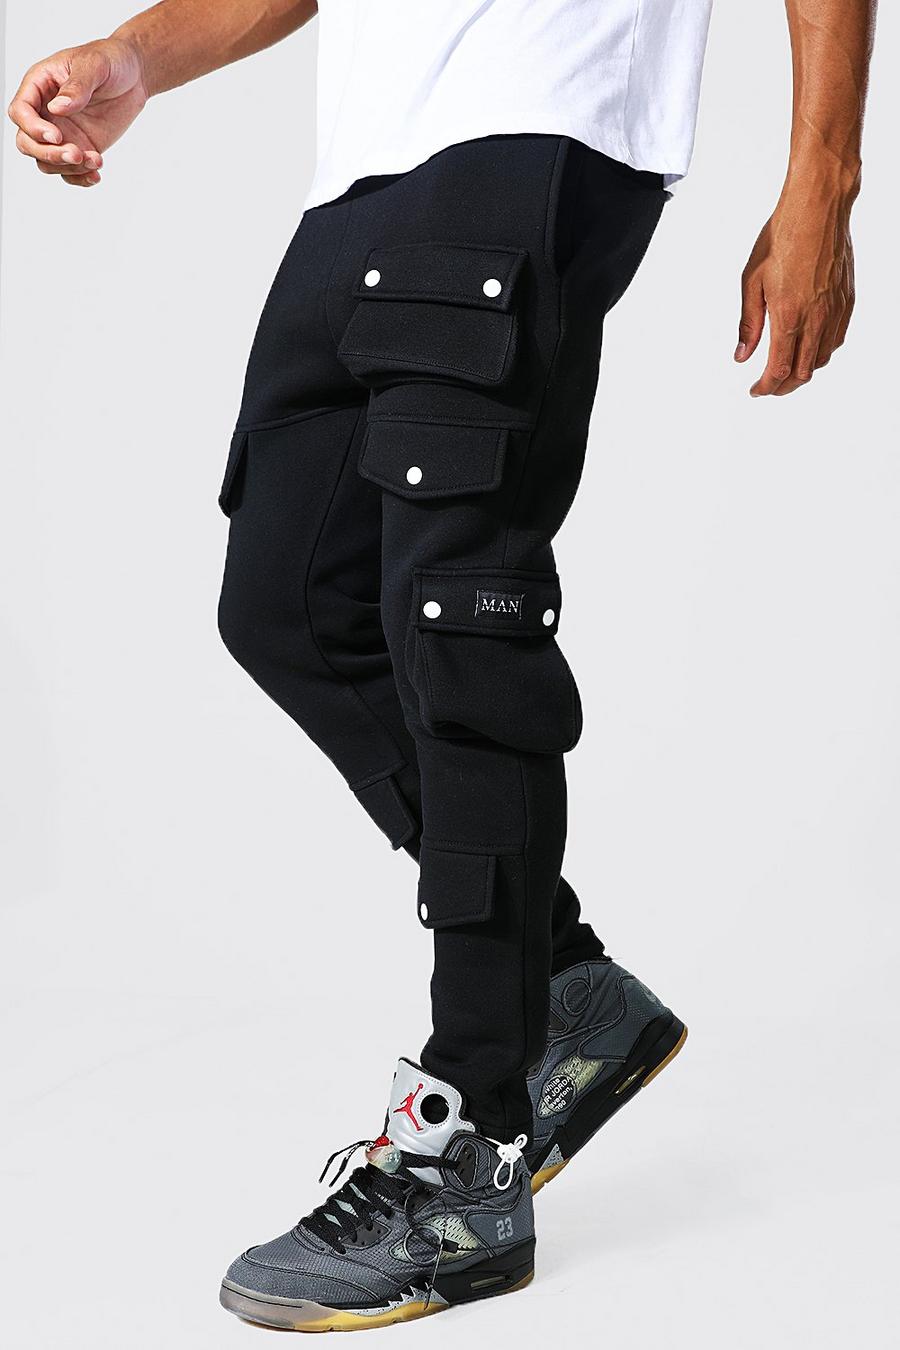 Pantaloni tuta Tall Cargo con tasche e polsini alle caviglie, Black nero